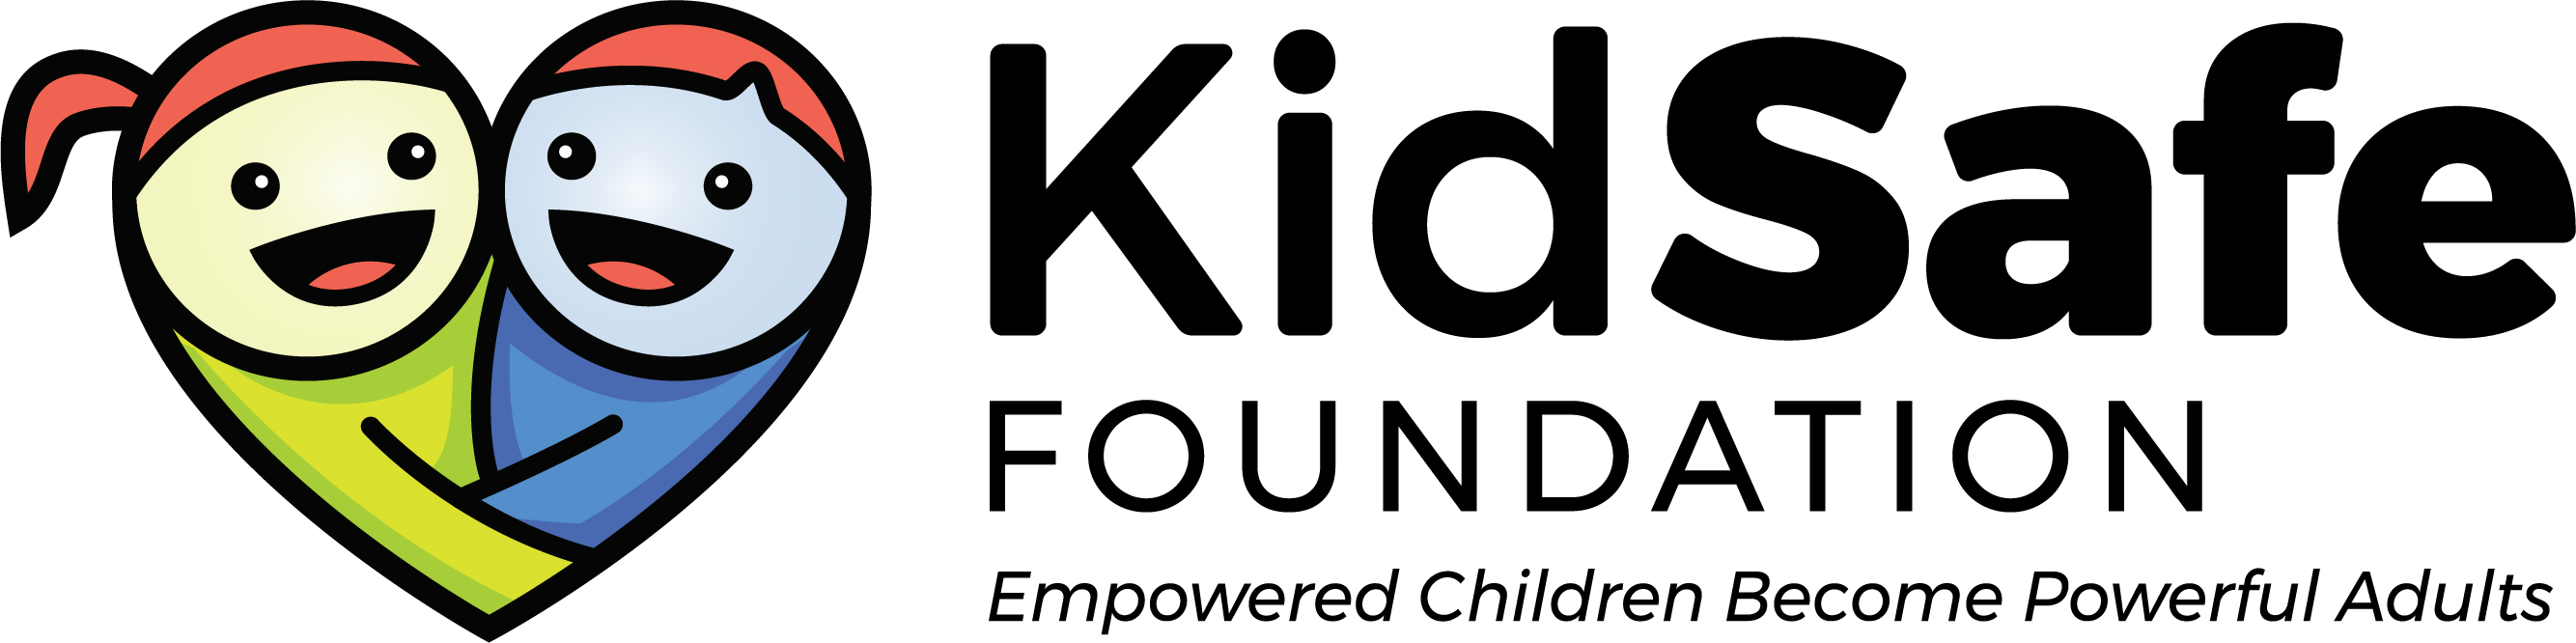 KidSafe Foundation Logo RGB Tag